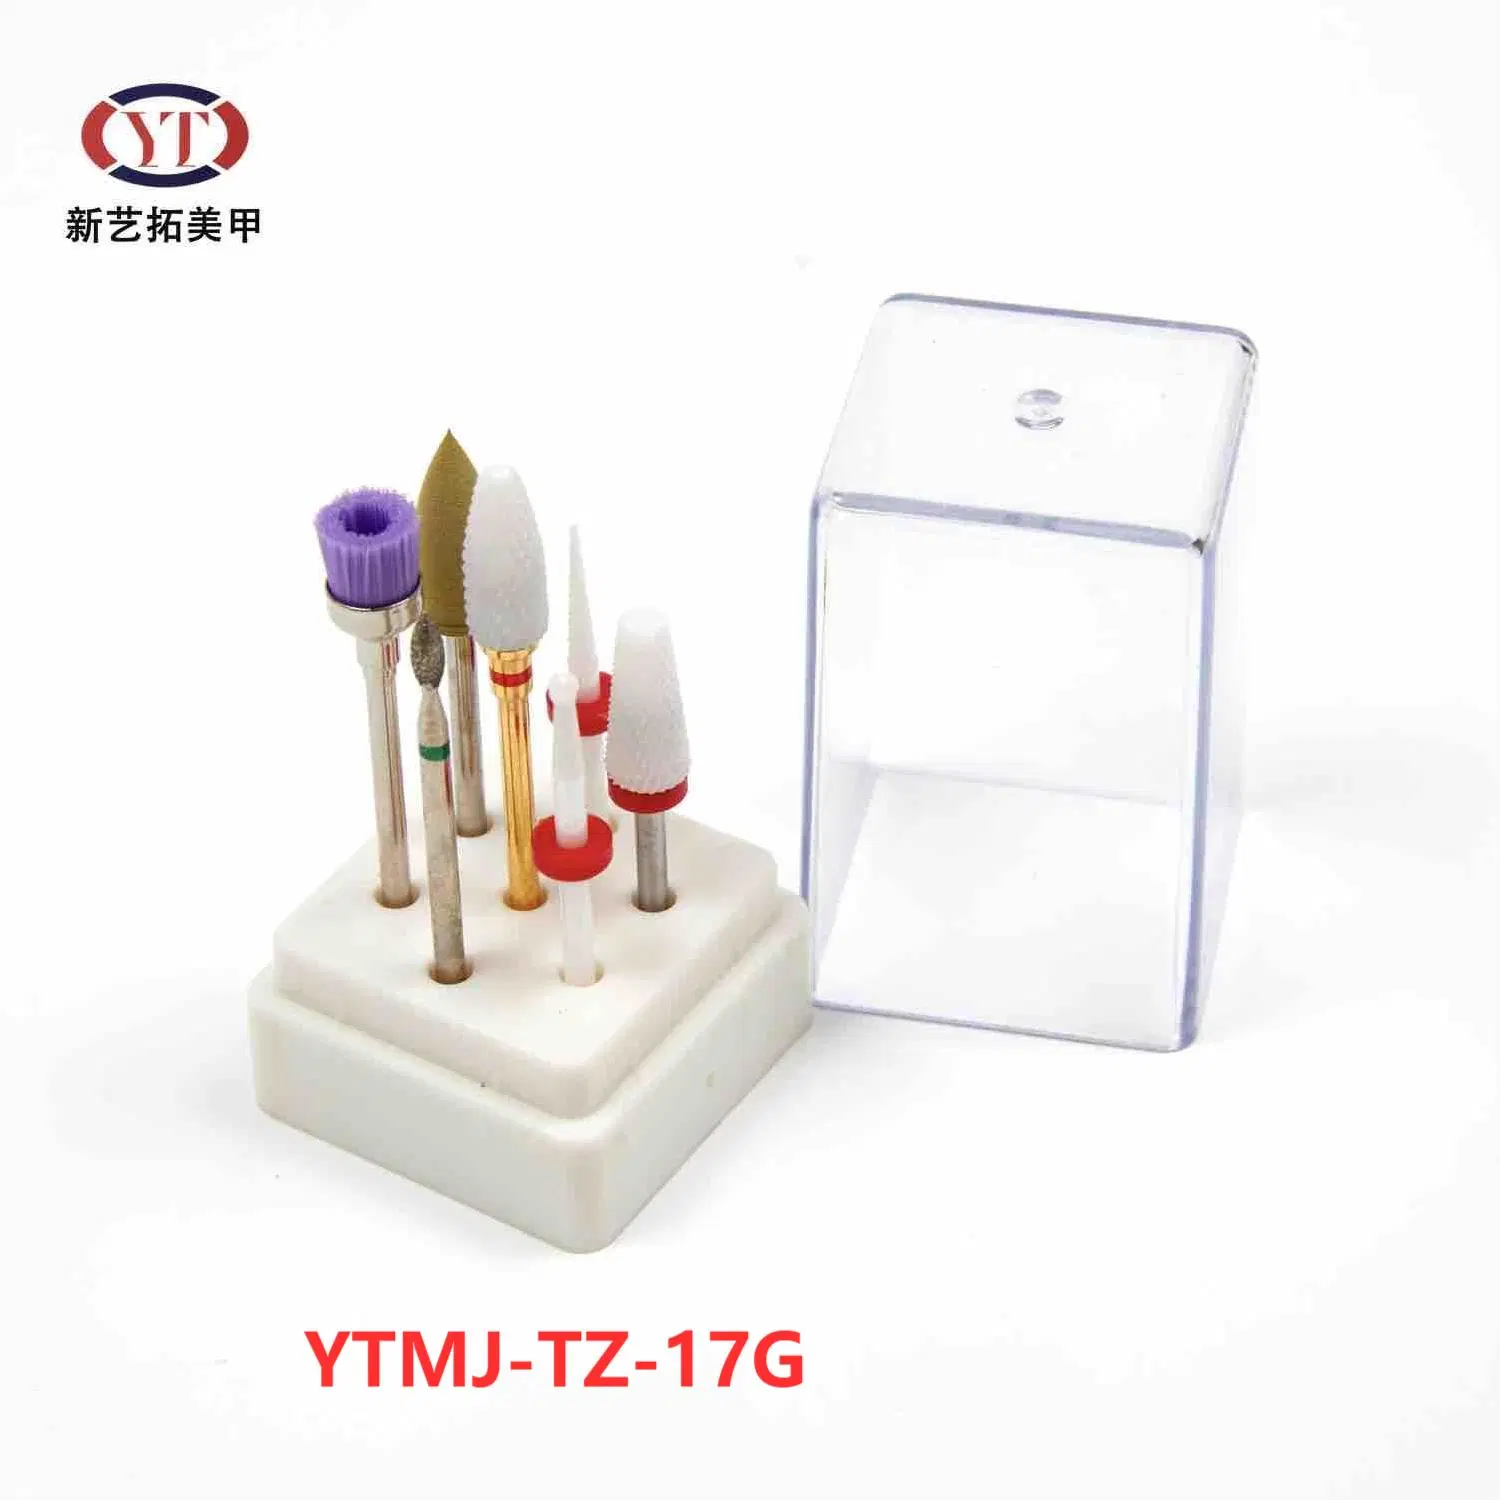 Ytmj-Tz-17h 7 ПК из карбида вольфрама керамические лак для ногтей коронок установить электрический маникюр педикюр заусенцы файл сверла бит шлифования